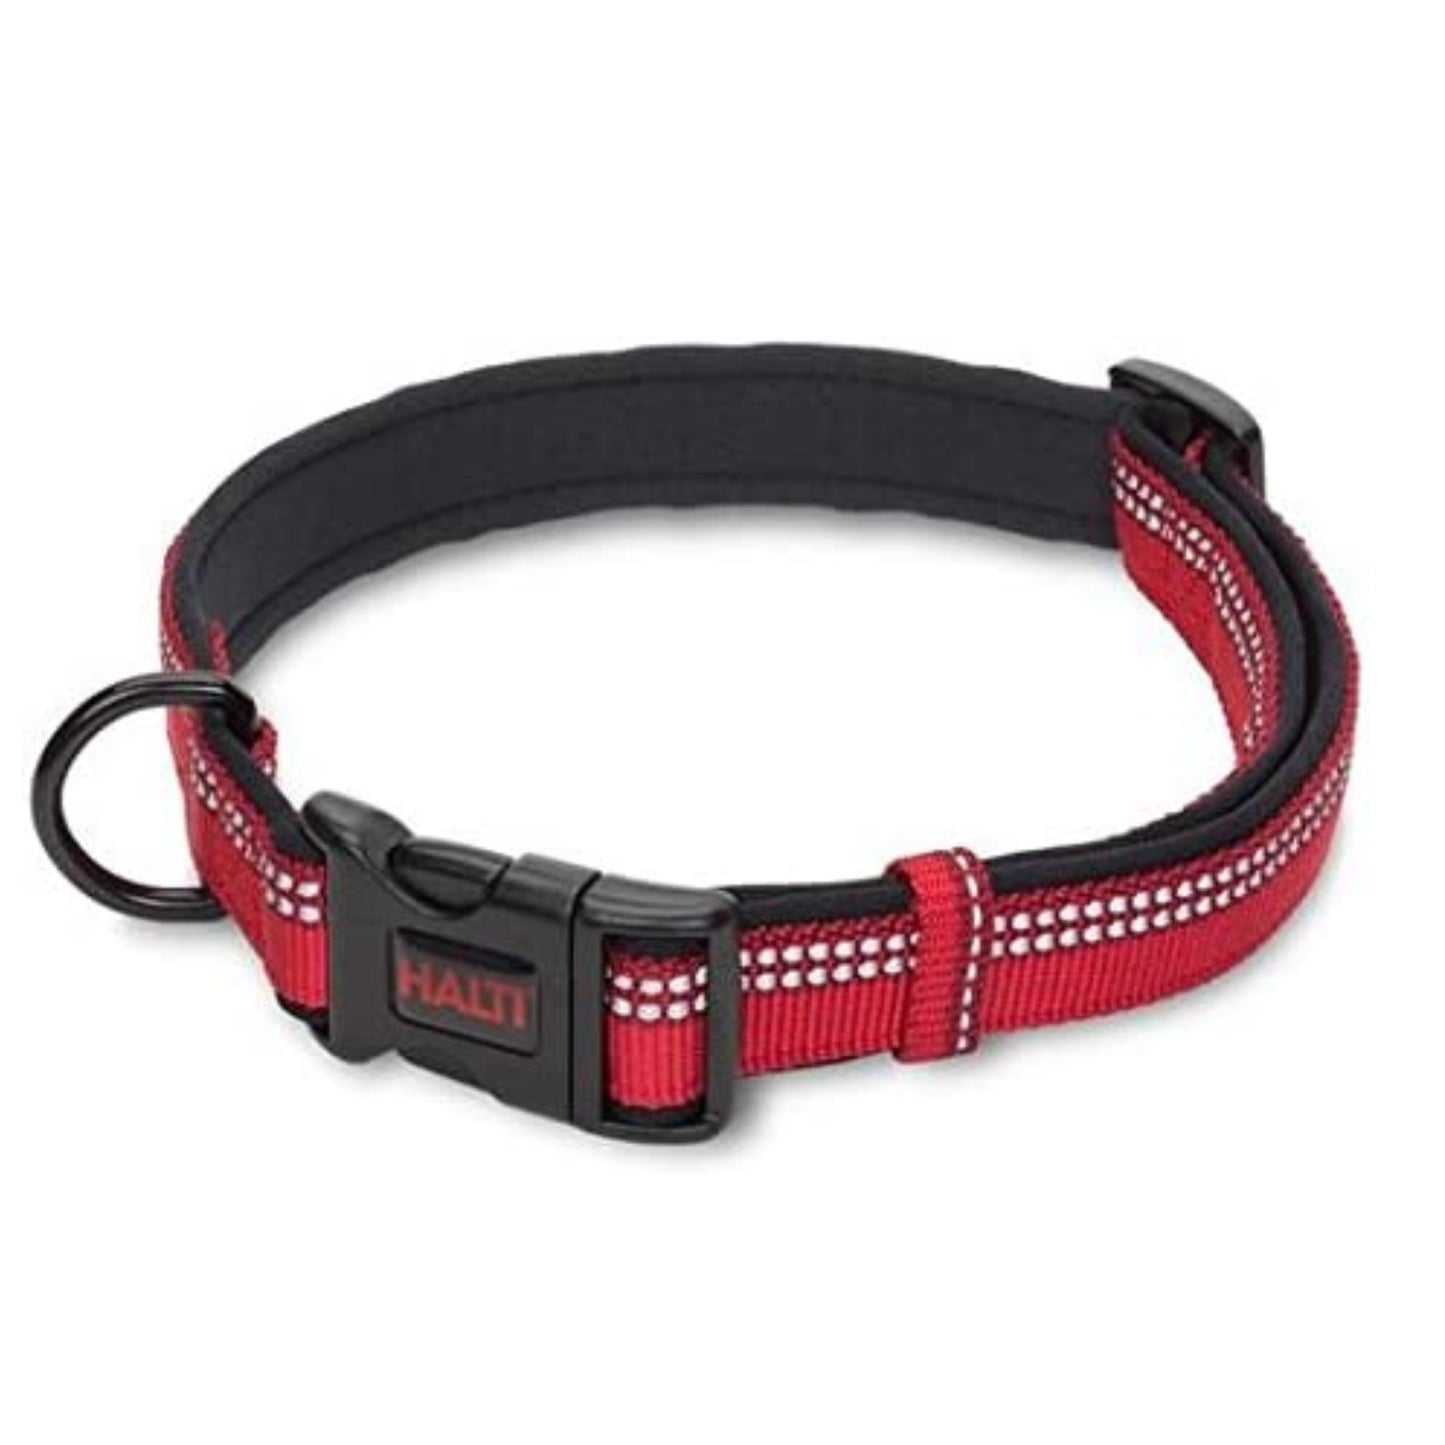 Halti Comfort Walking Dog Collar Red